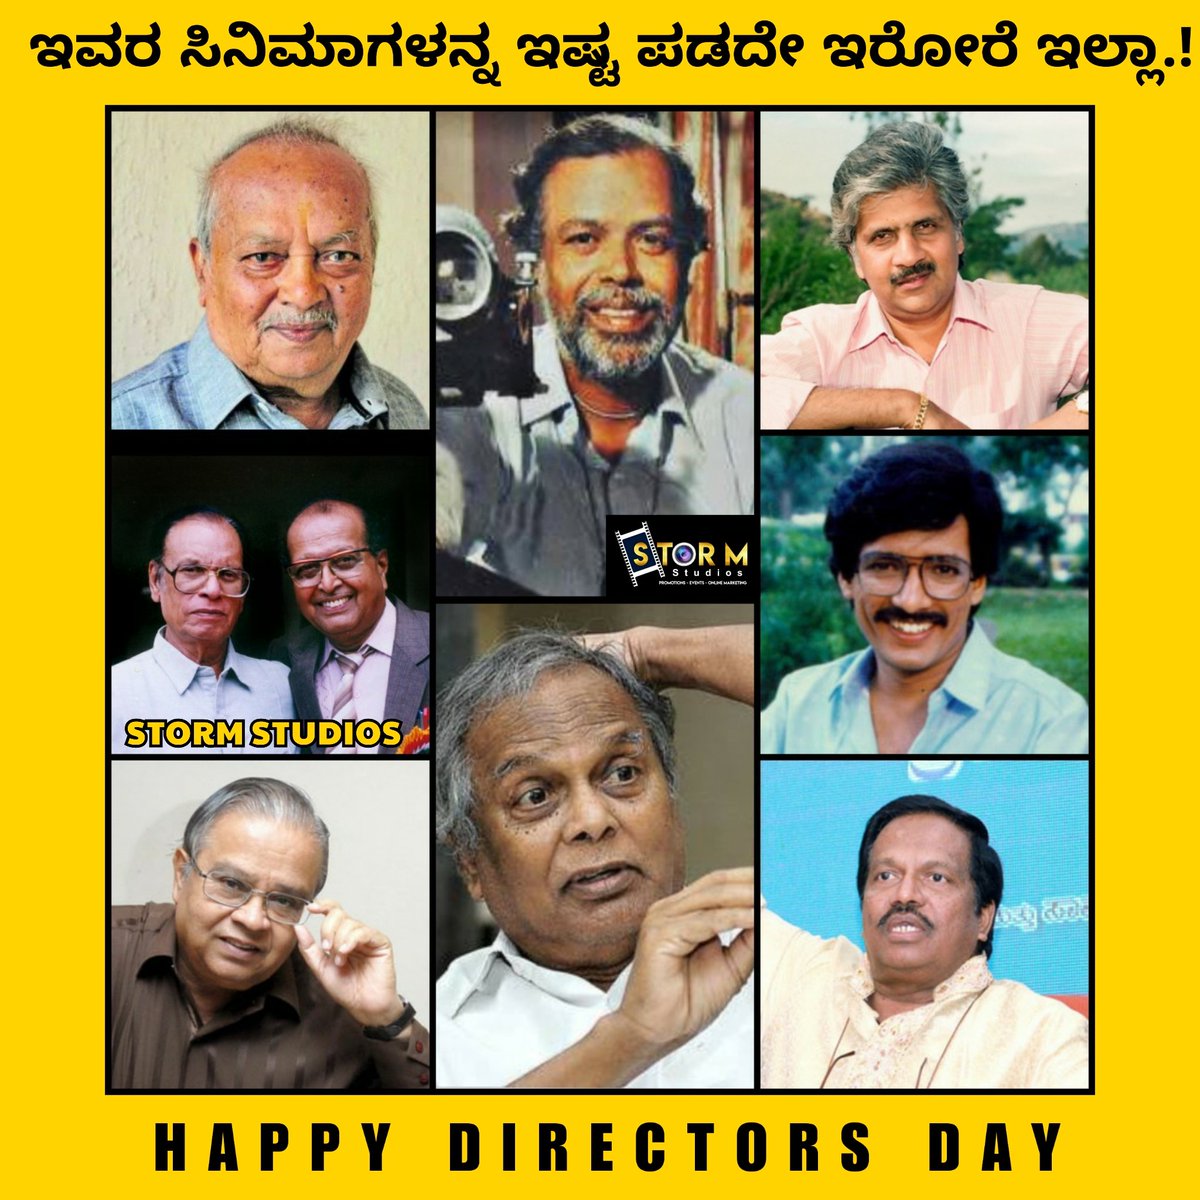 Legendary Directors ❤
#PuttannaKanagal
#DhoraiBhagawan #Siddhalingaiha #MSRajashekar #Bhargava #RajendraSinghBabu #Kashinath #Nagabharana